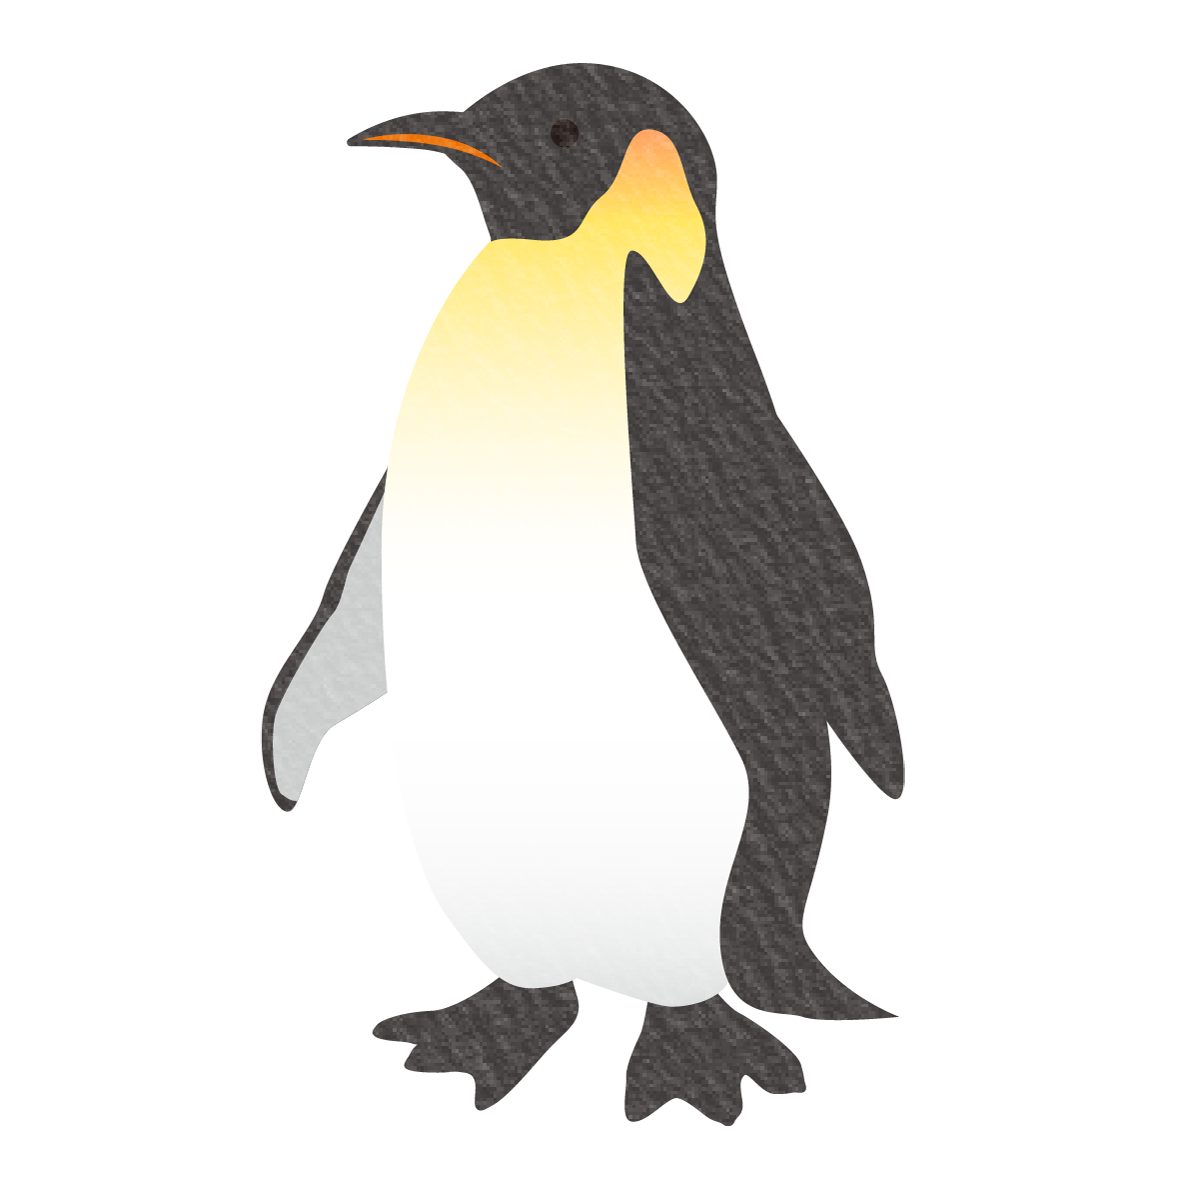 南極のアイドル、ペンギンのイラストです☆<br>
動物園や水族館の遠足のしおりへ挿絵としてお使いいただけます♪
<br>
流氷の上で生活しているイメージが強いペンギンですが、北極には住んでいないのでご利用の際はお気をつけください。